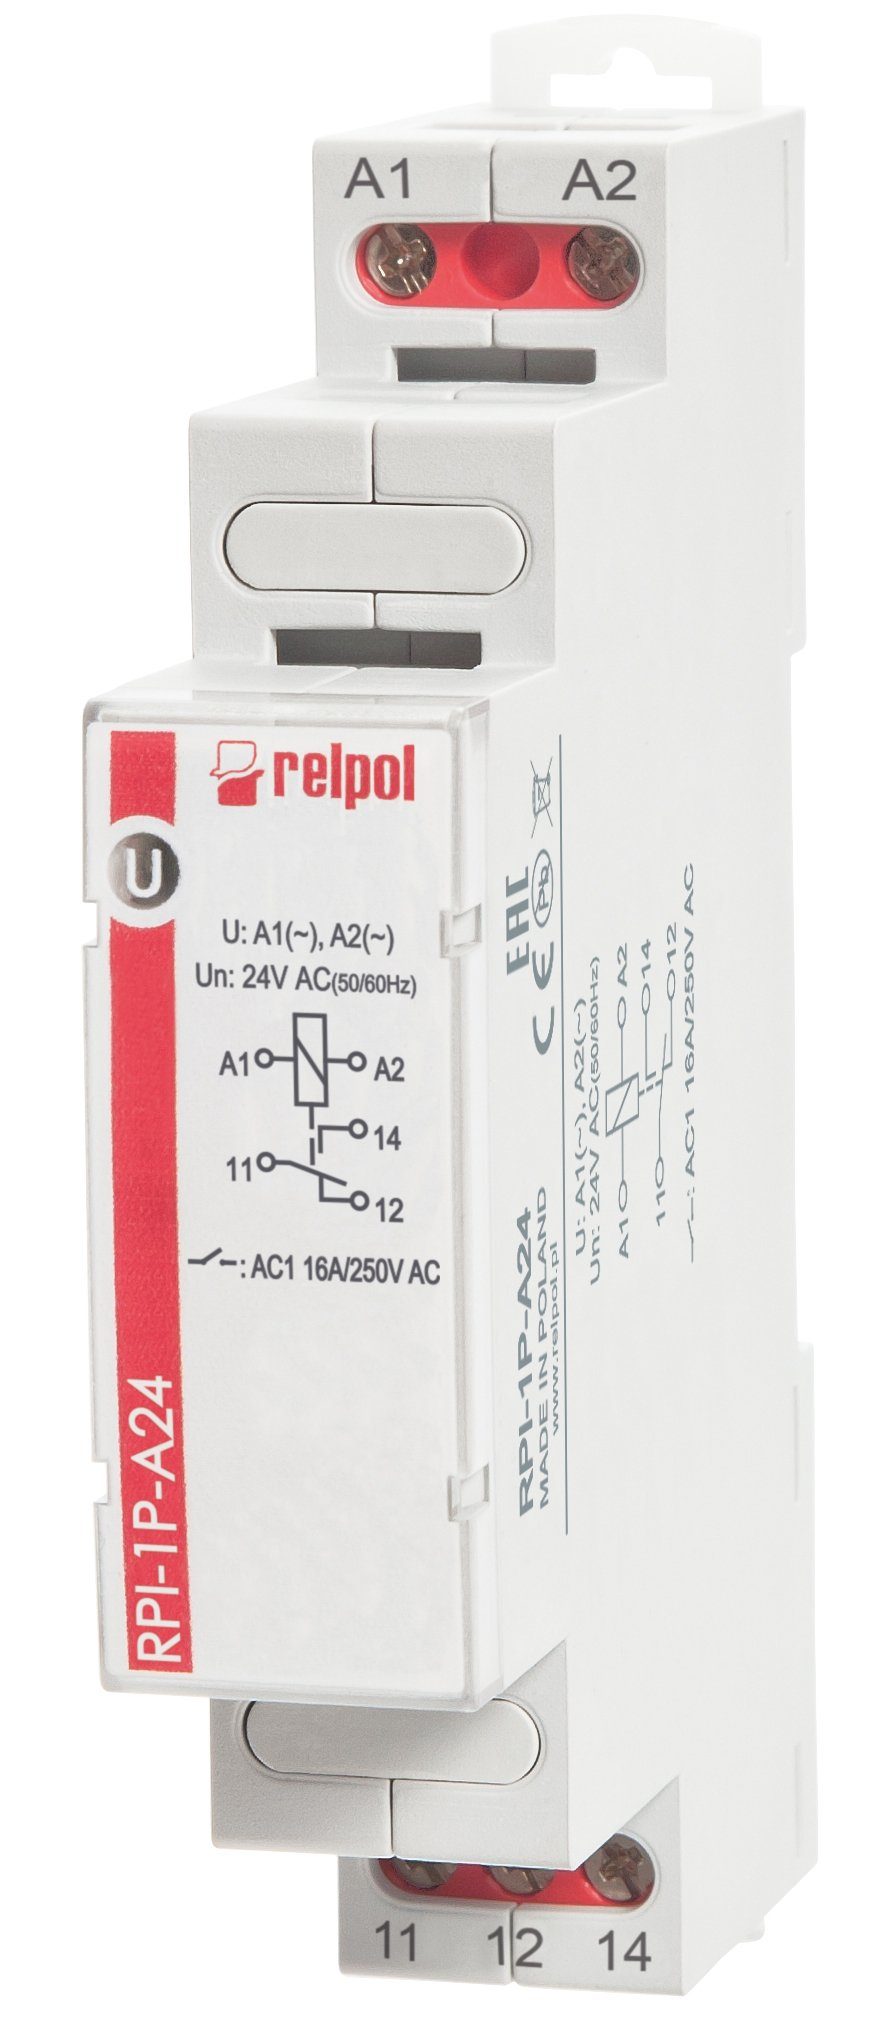 Relpol Verteilerbox RPI-1P-A24 - 24V AC 16A Installationsrelais 1 Wechsler, Schaltrelais für Hutschiene